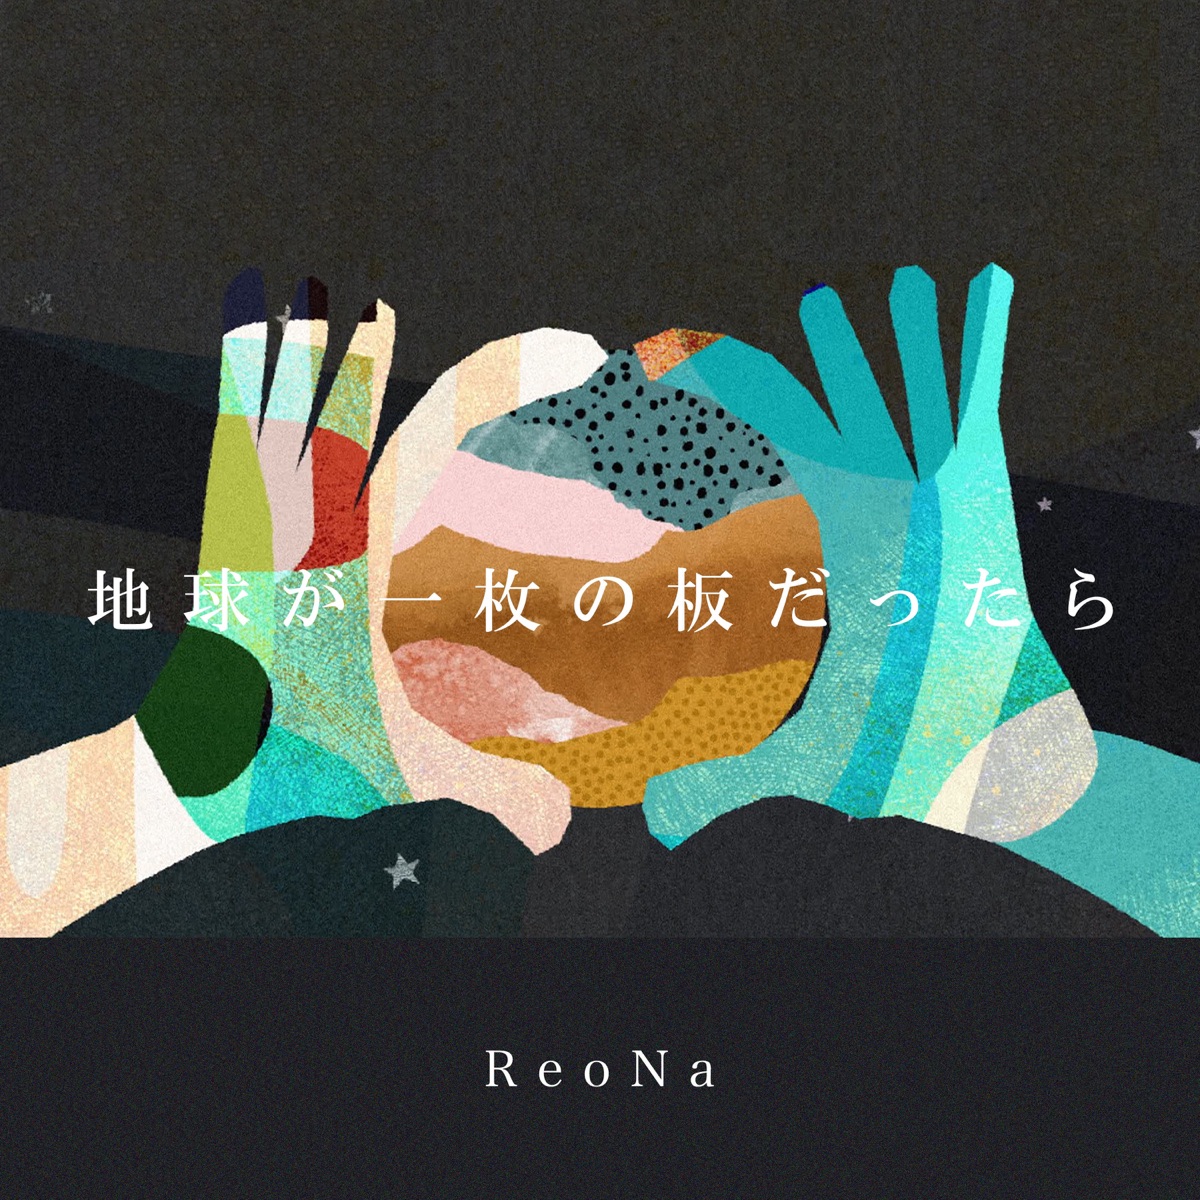 Cover art for『ReoNa - Chikyuu ga Ichimai no Ita Dattara』from the release『Chikyuu ga Ichimai no Ita Dattara』